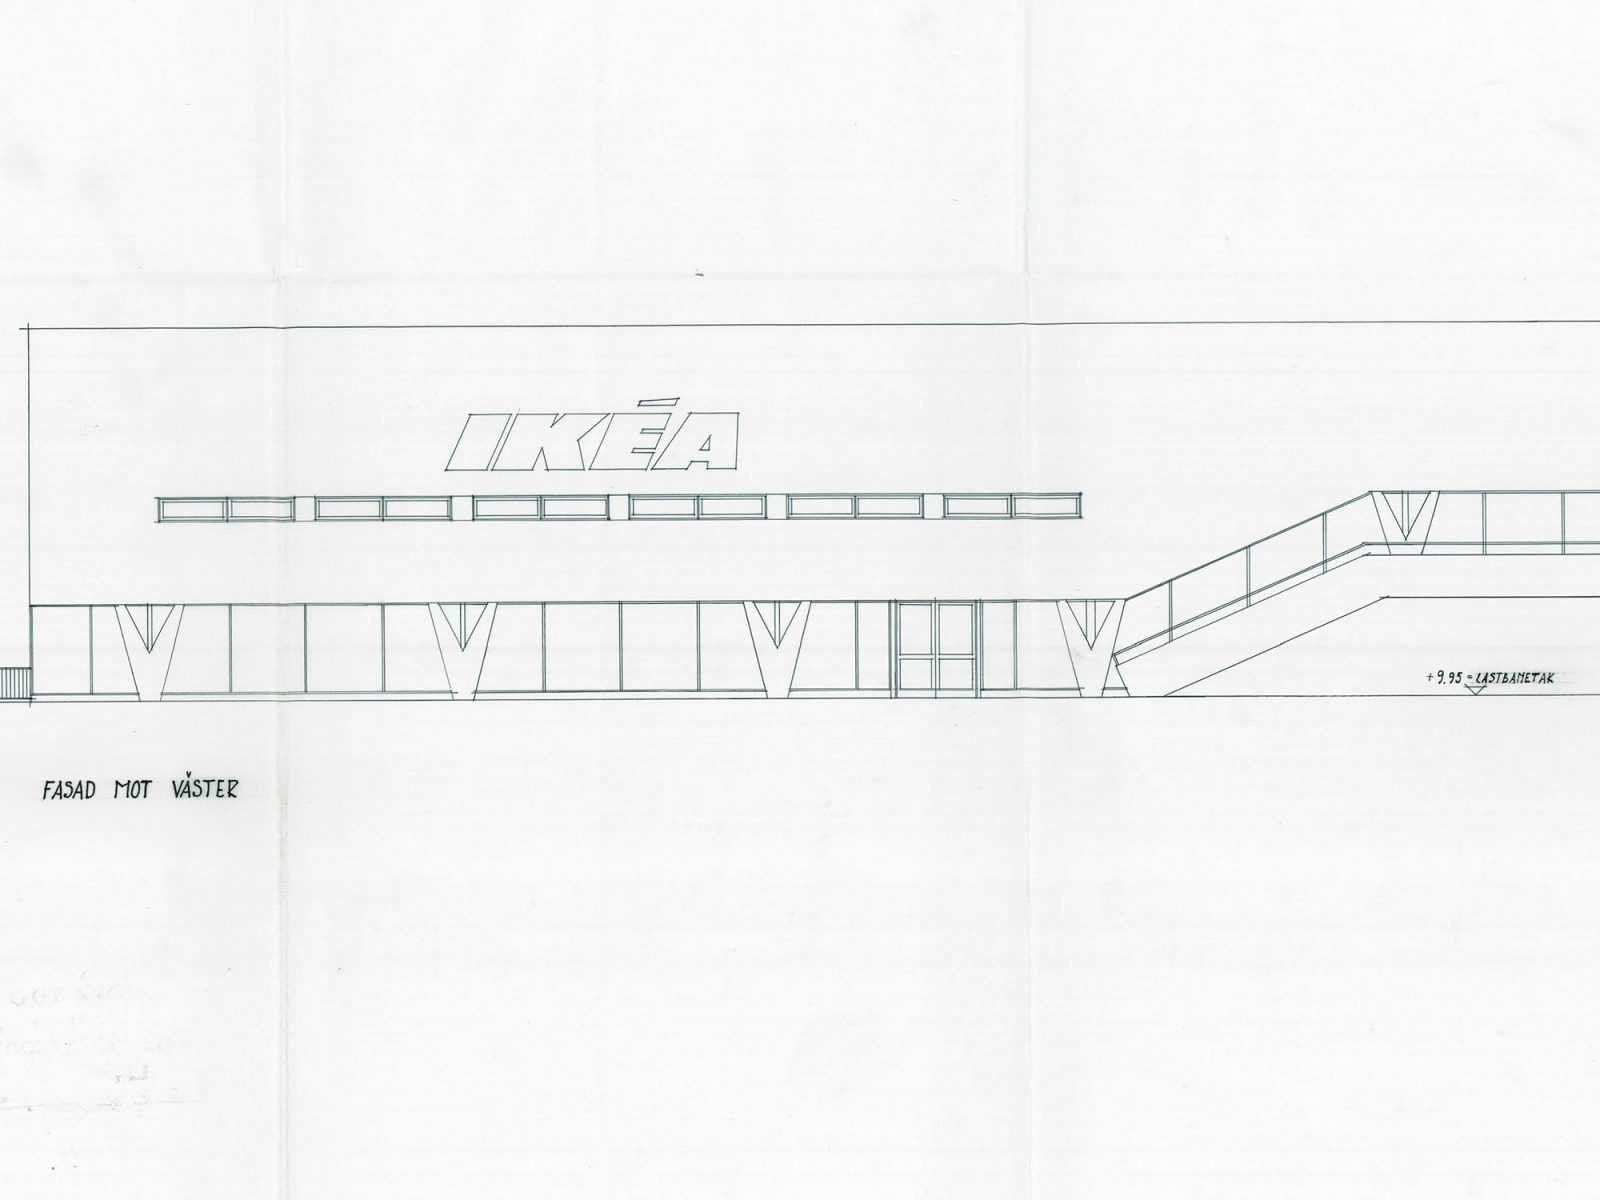 Plan d’architecte d’un bâtiment bas avec galerie et grandes vitrines, colonnes en V, enseigne IKEA sur la façade.